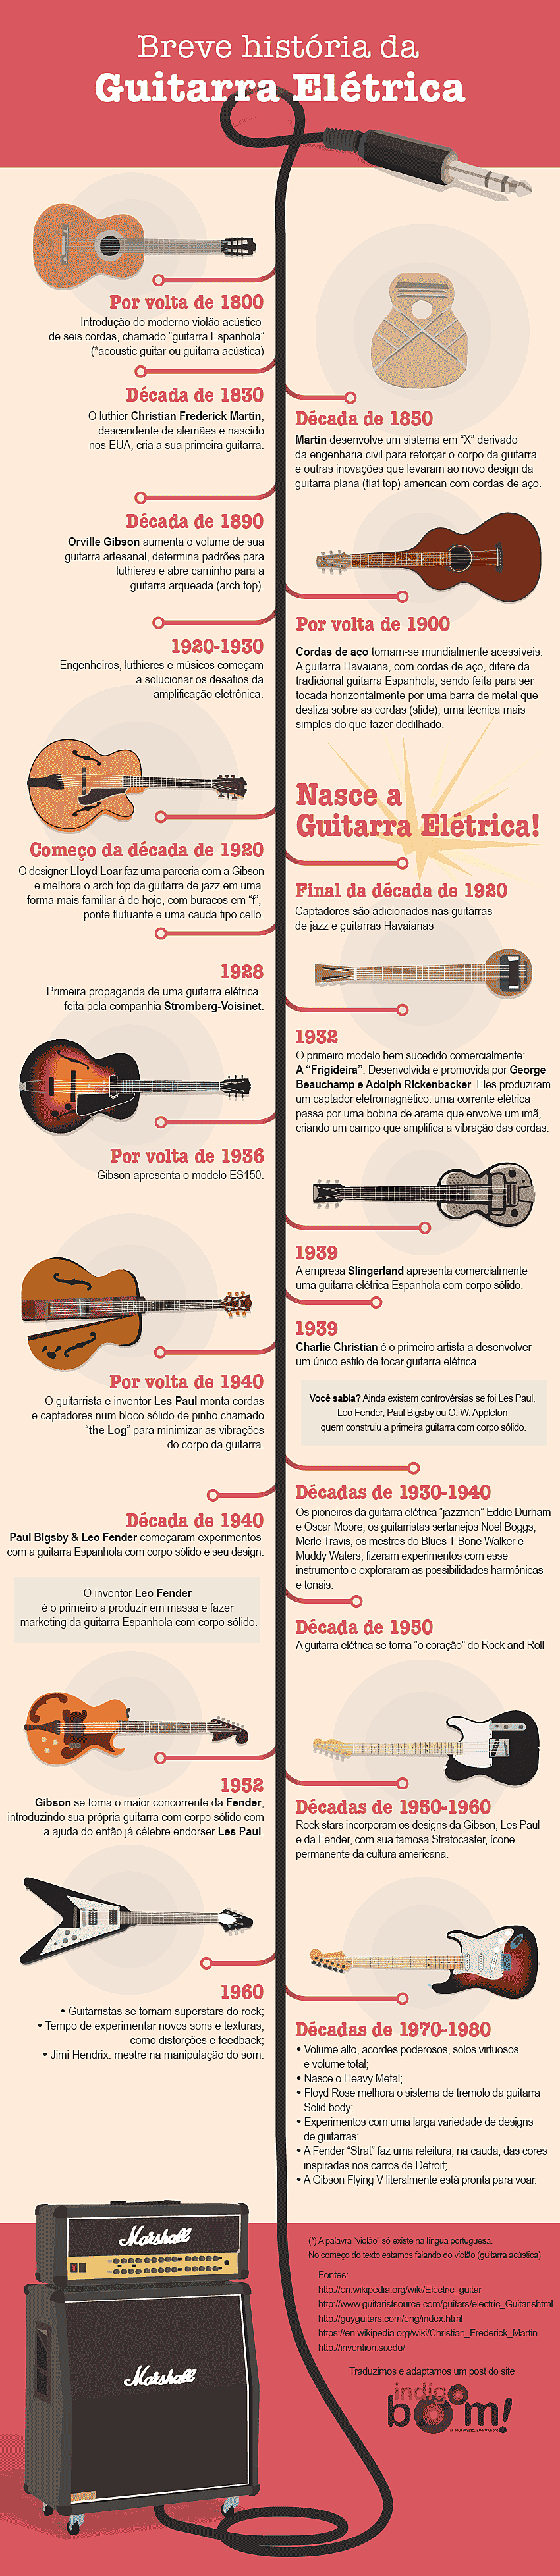 breve história da guitarra elétrica